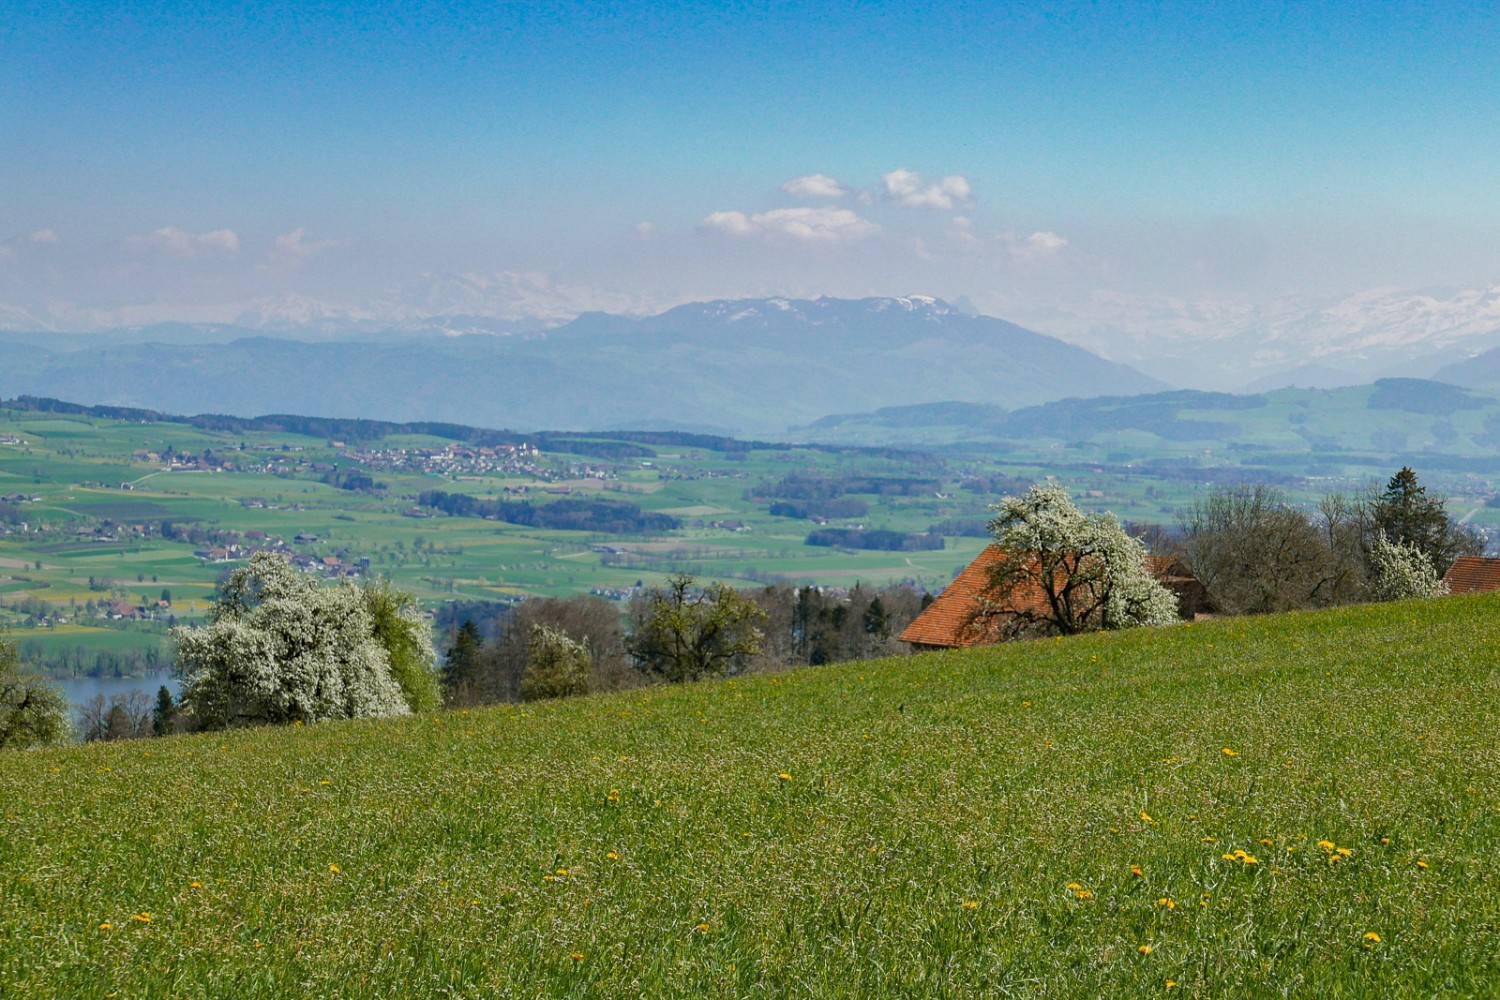 Ausblick auf den Baldeggersee und die Alpenkette vom Hügelzug Erlose aus. Bild: Susanne Frauenfelder